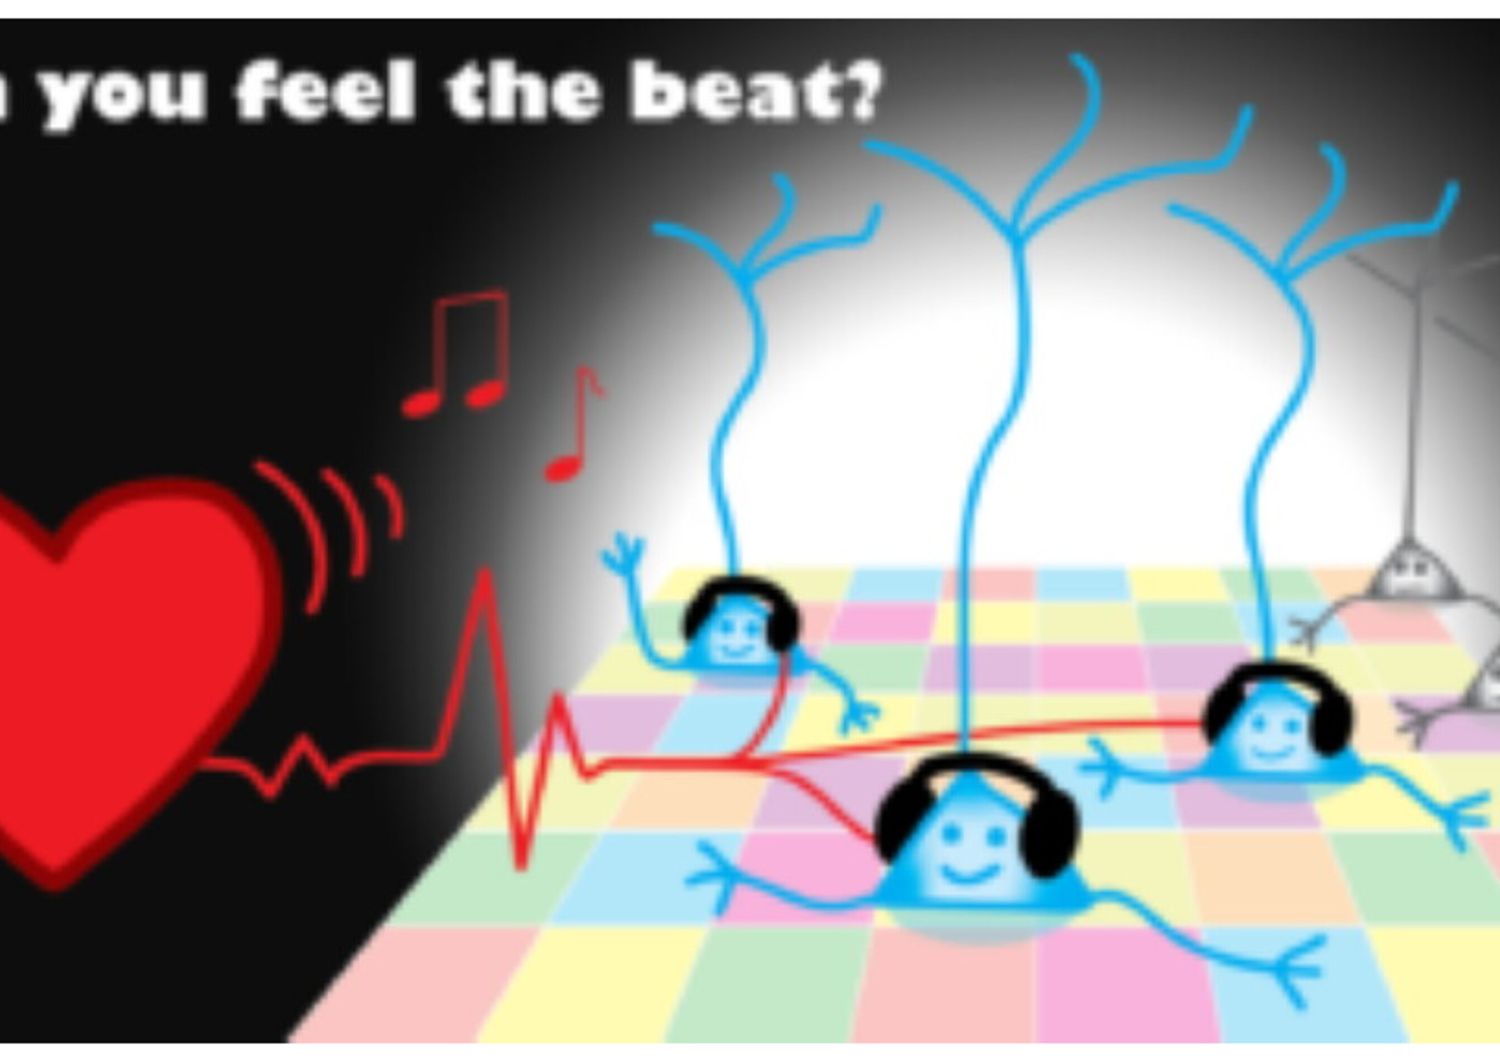 Il ritmo del battito cardiaco viene percepito direttamente dai neuroni del cervello.